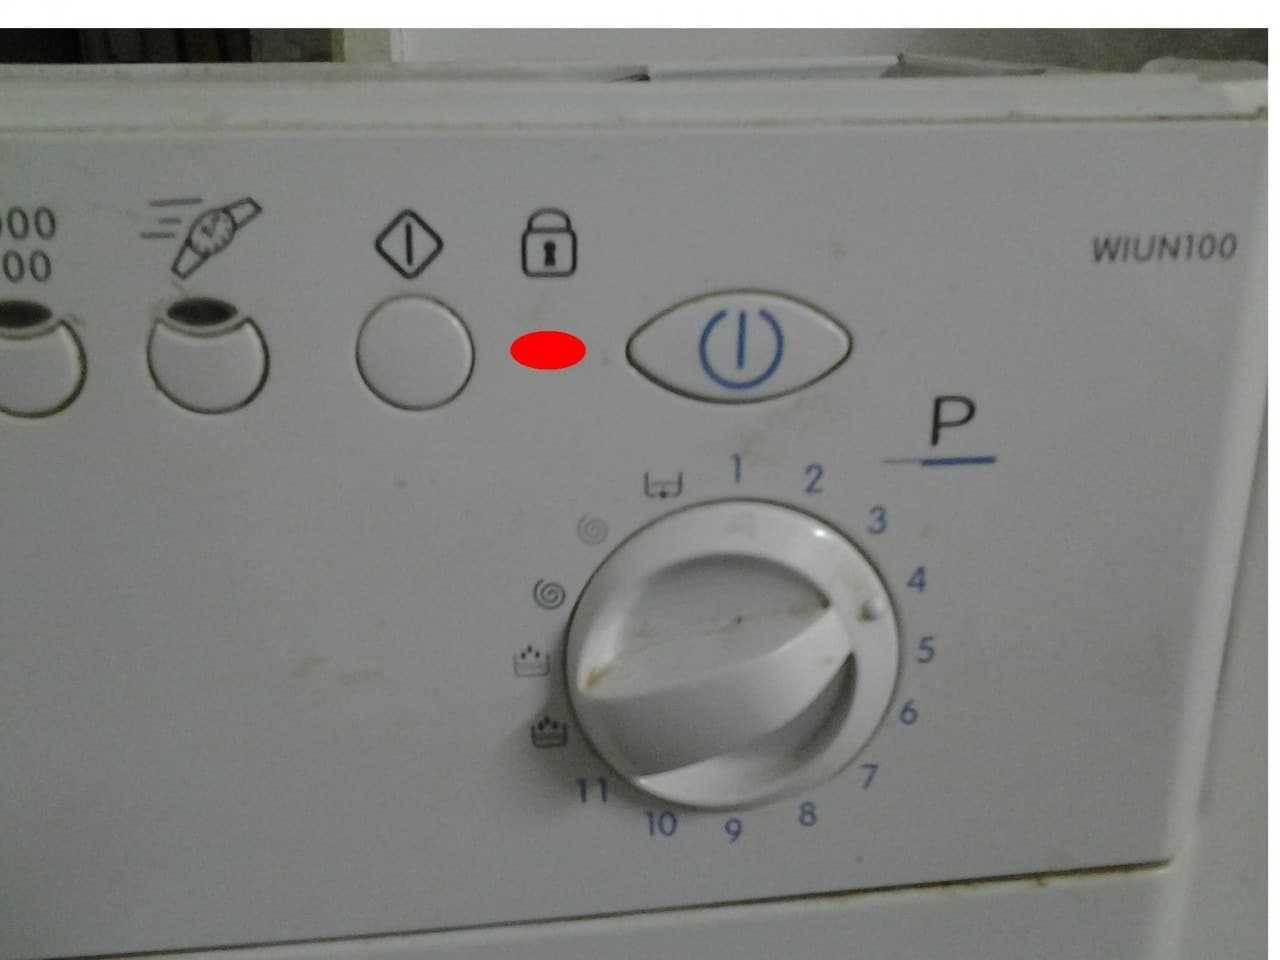 Стиральная машина "индезит": мигают все индикаторы (лампочки). почему это происходит?